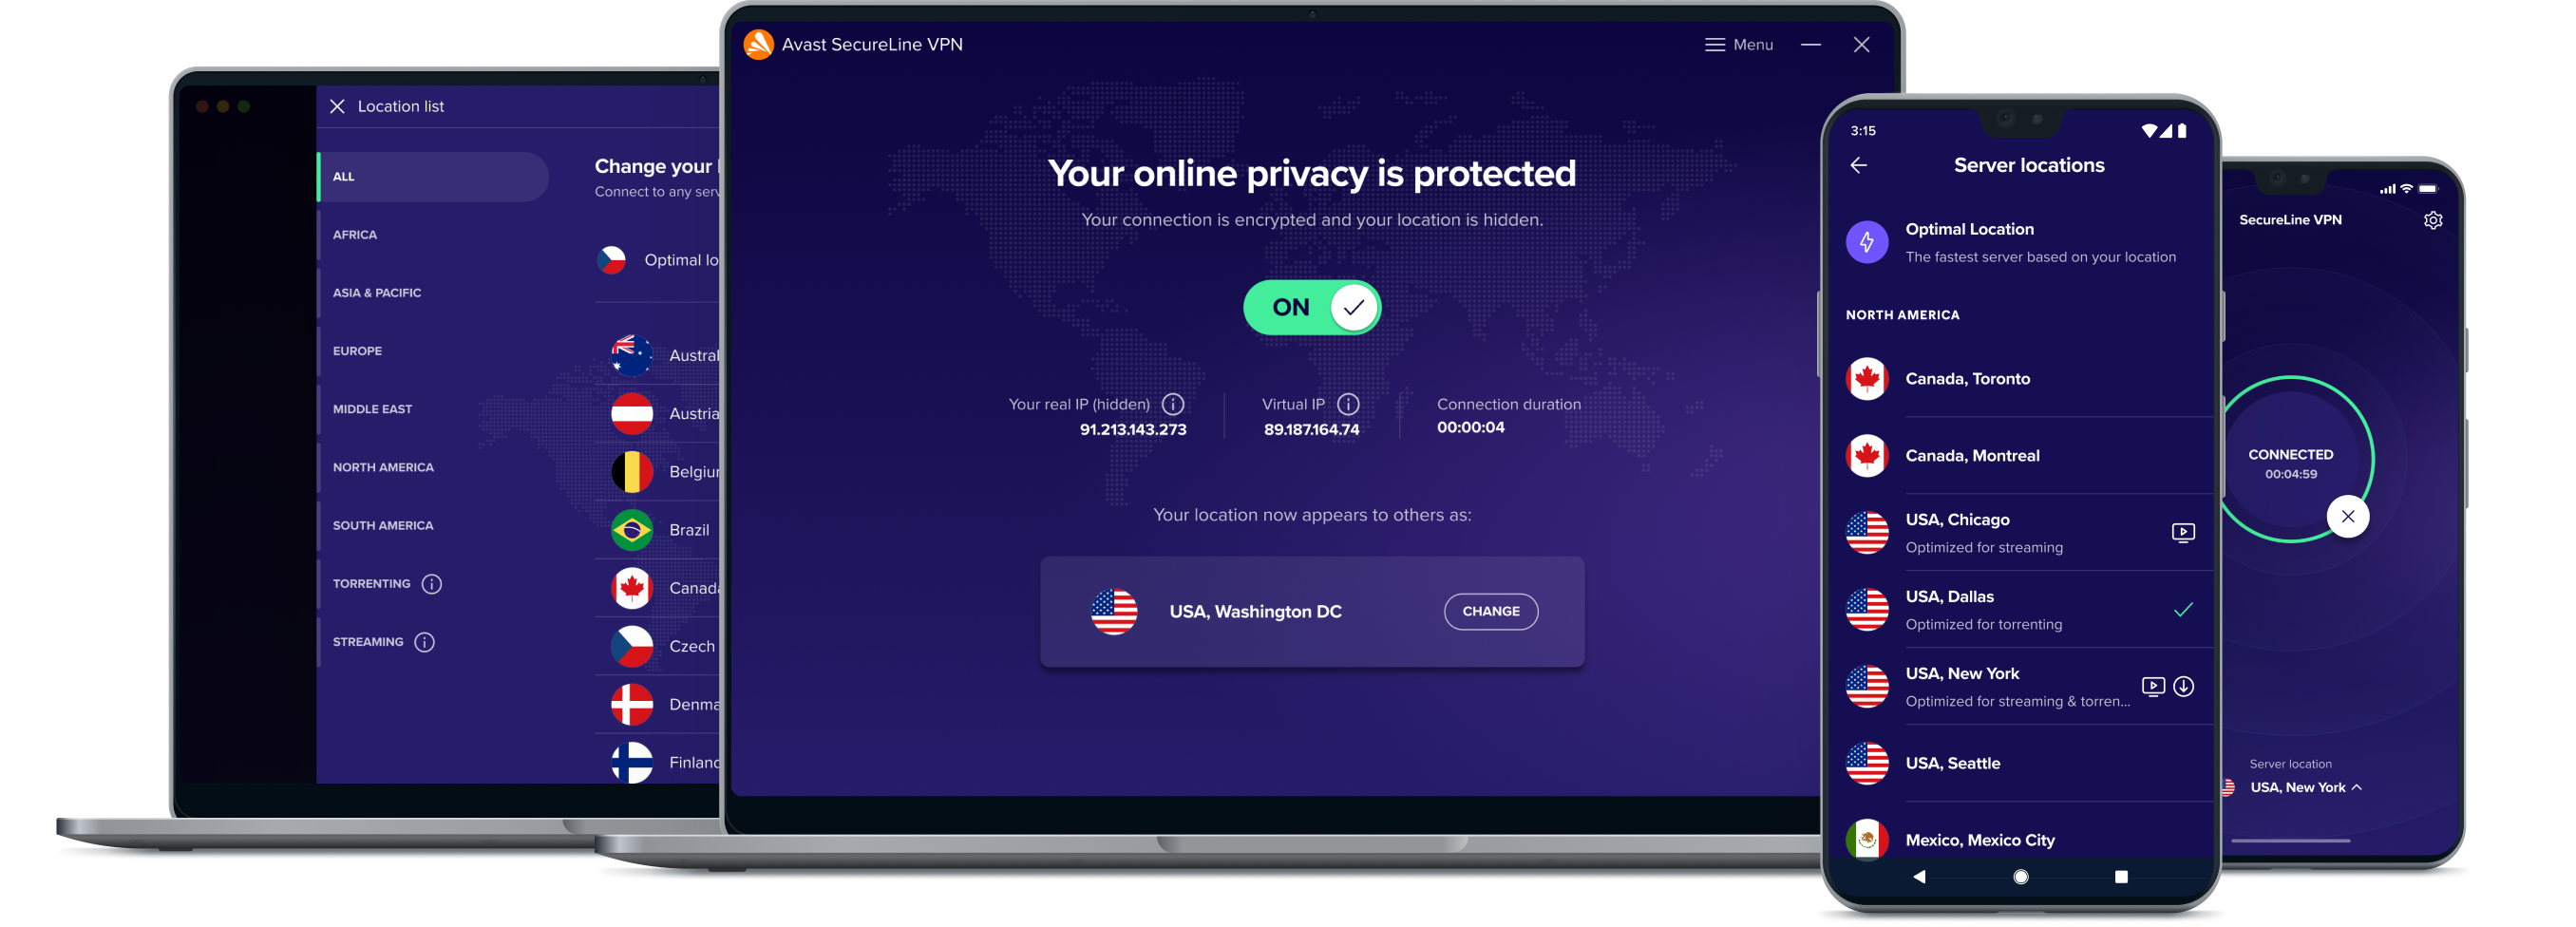 Откройте для себя больше свободы в Интернете с помощью нашей службы VPN